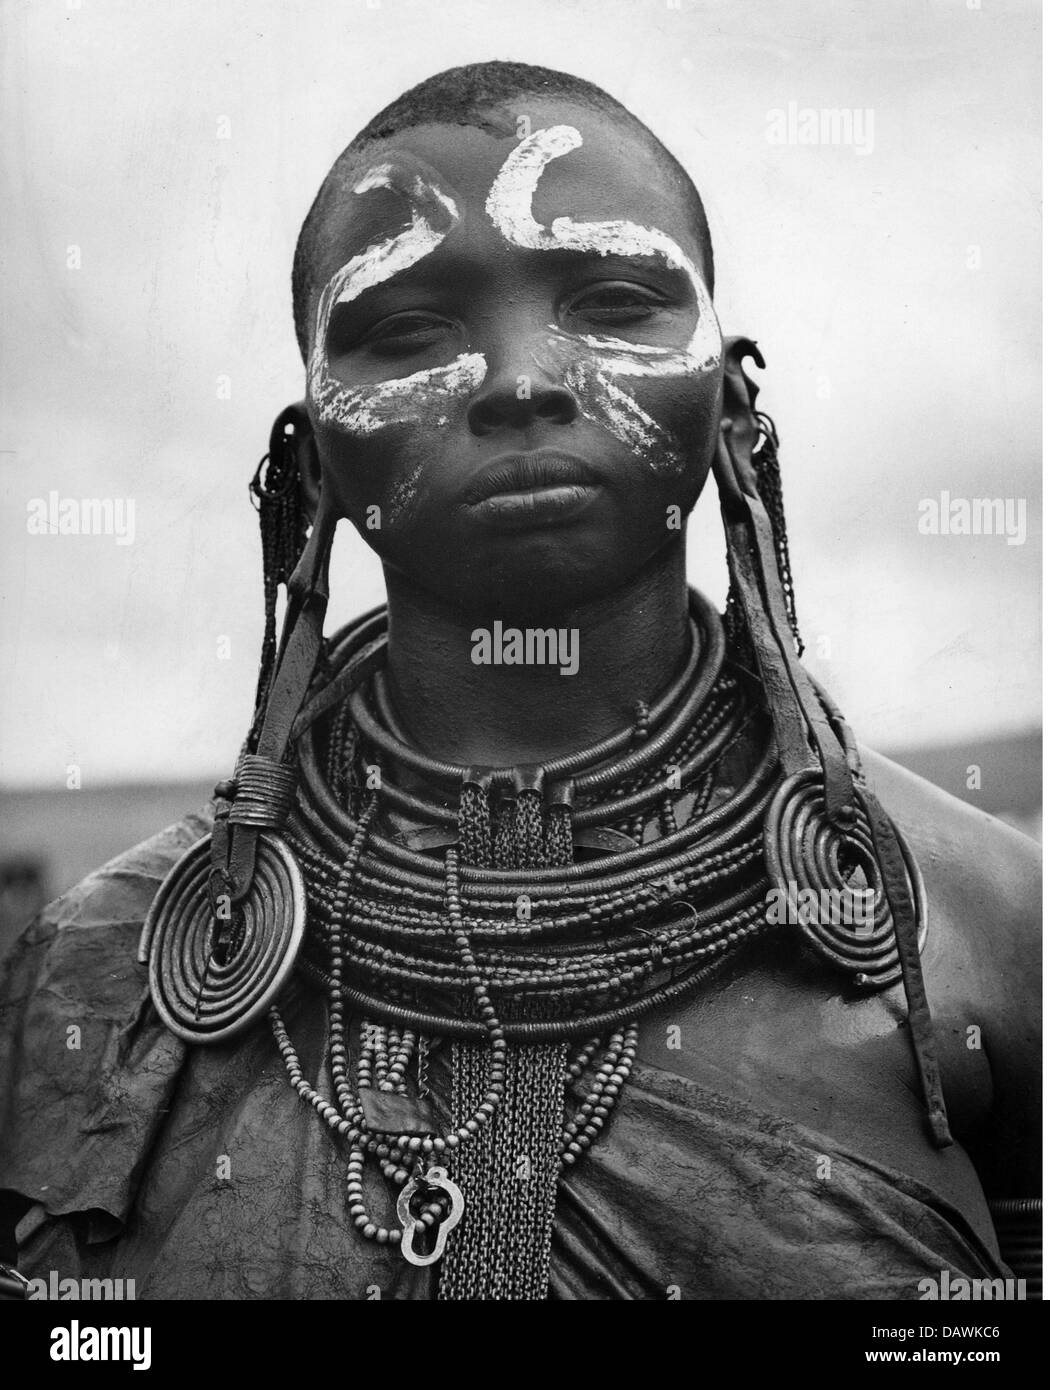 Persone, etniche, donne, donne africane, ritratti con body painting, anni 60, diritti aggiuntivi-clearences-non disponibile Foto Stock